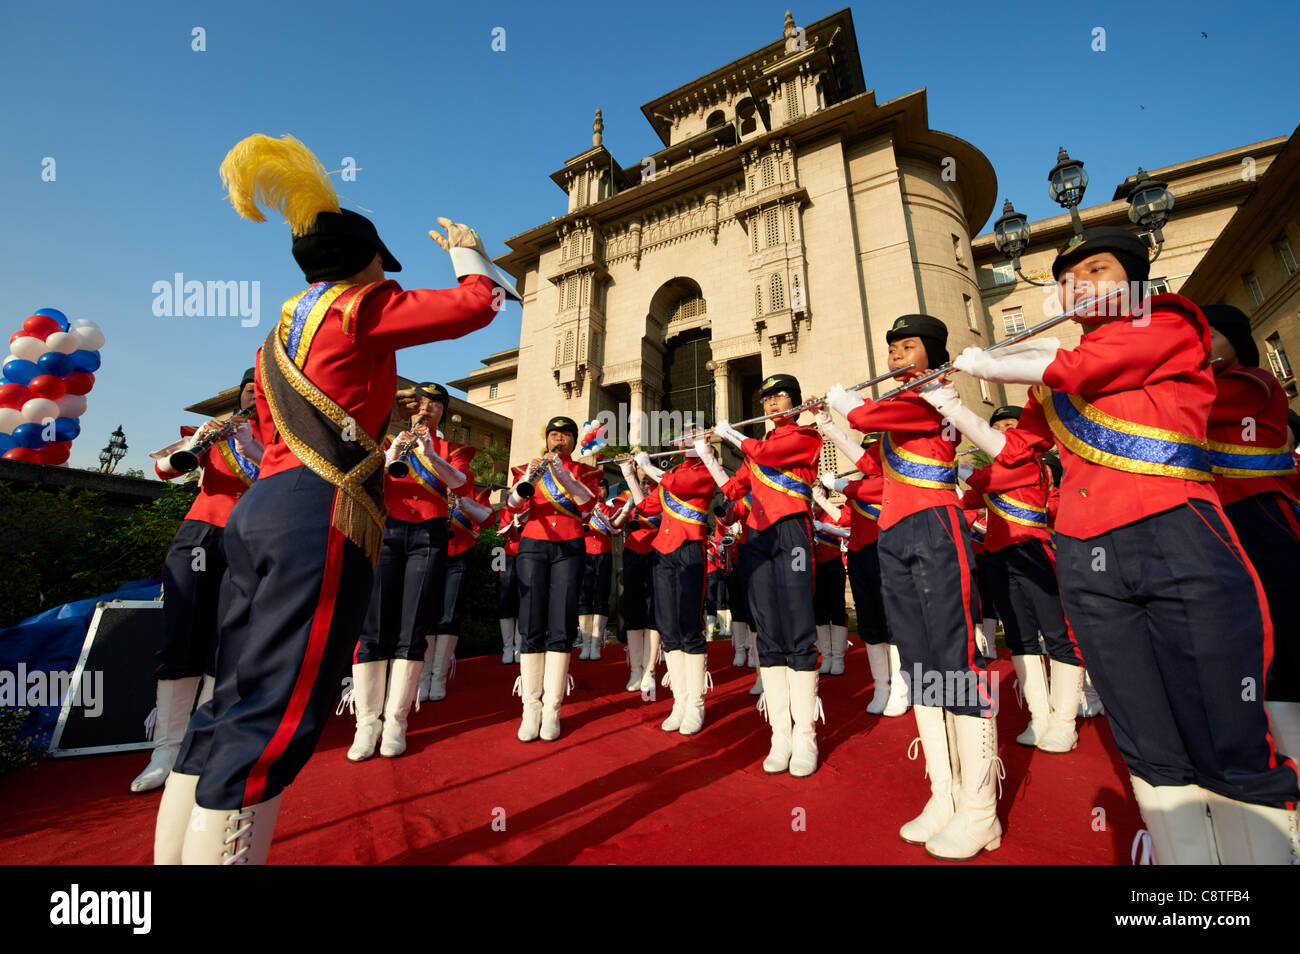 Eine Band gekleidet in Uniformen spielen außerhalb des Parlamentsgebäudes. Stockfoto